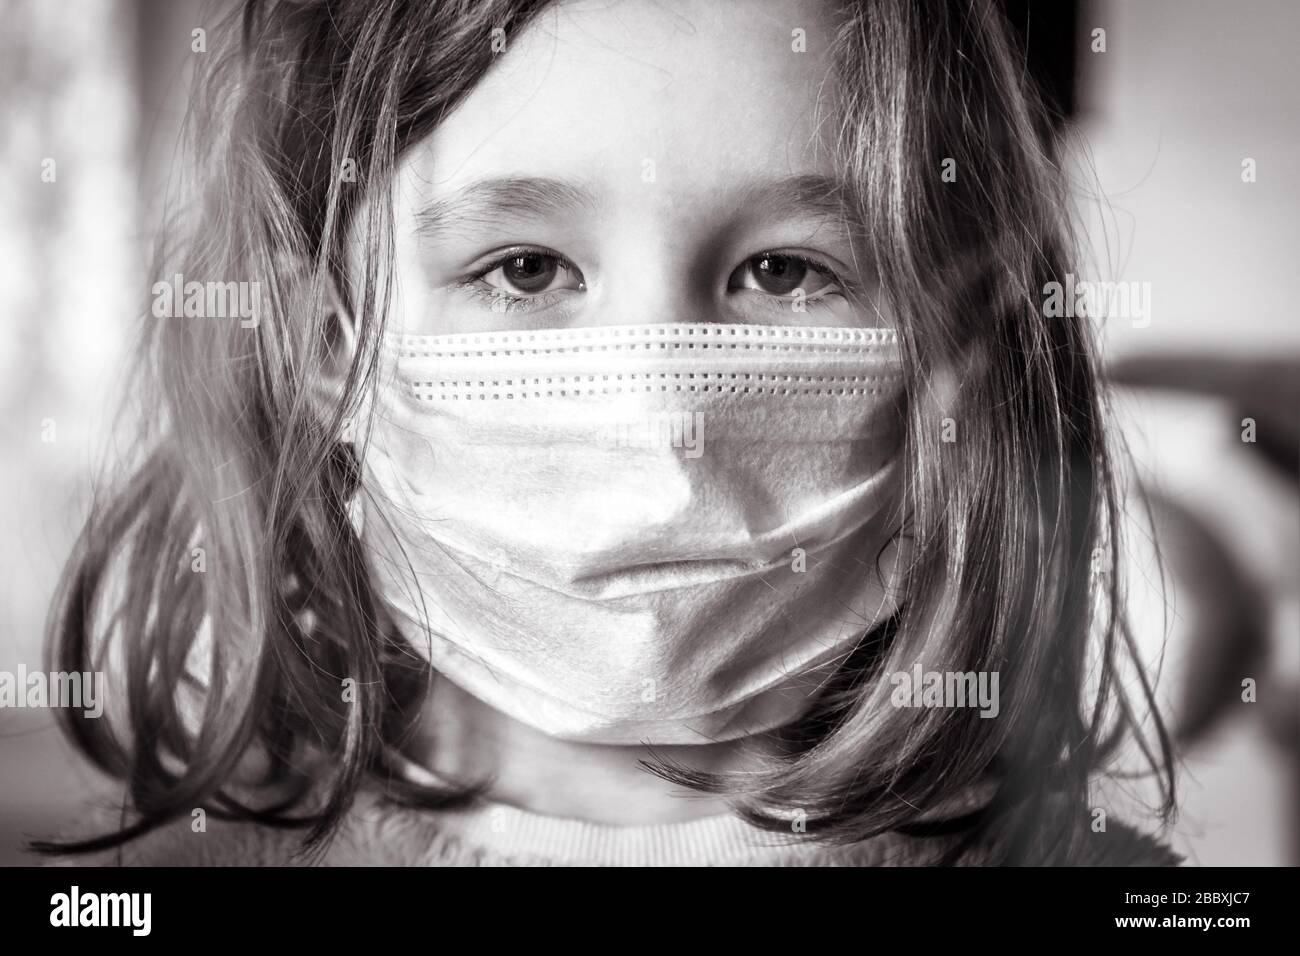 COVID-19 concetto di coronavirus, piccola ragazza in faccia maschera medica guardando attraverso la finestra a casa o clinica. Ritratto di bambino durante la quarantena a causa di coro Foto Stock